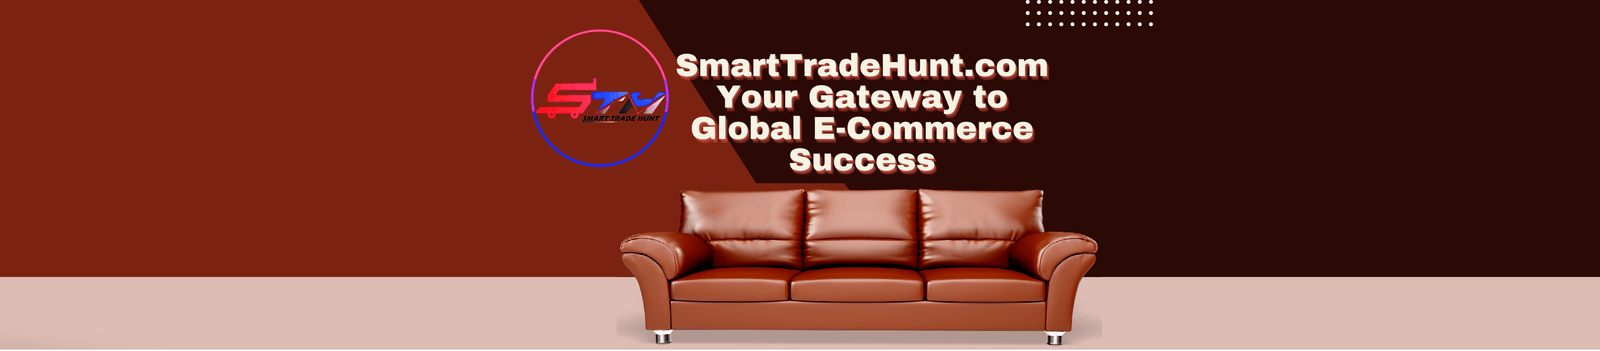 SMART TRADE HUNT E-COMMERCE SDN. BHD. promo